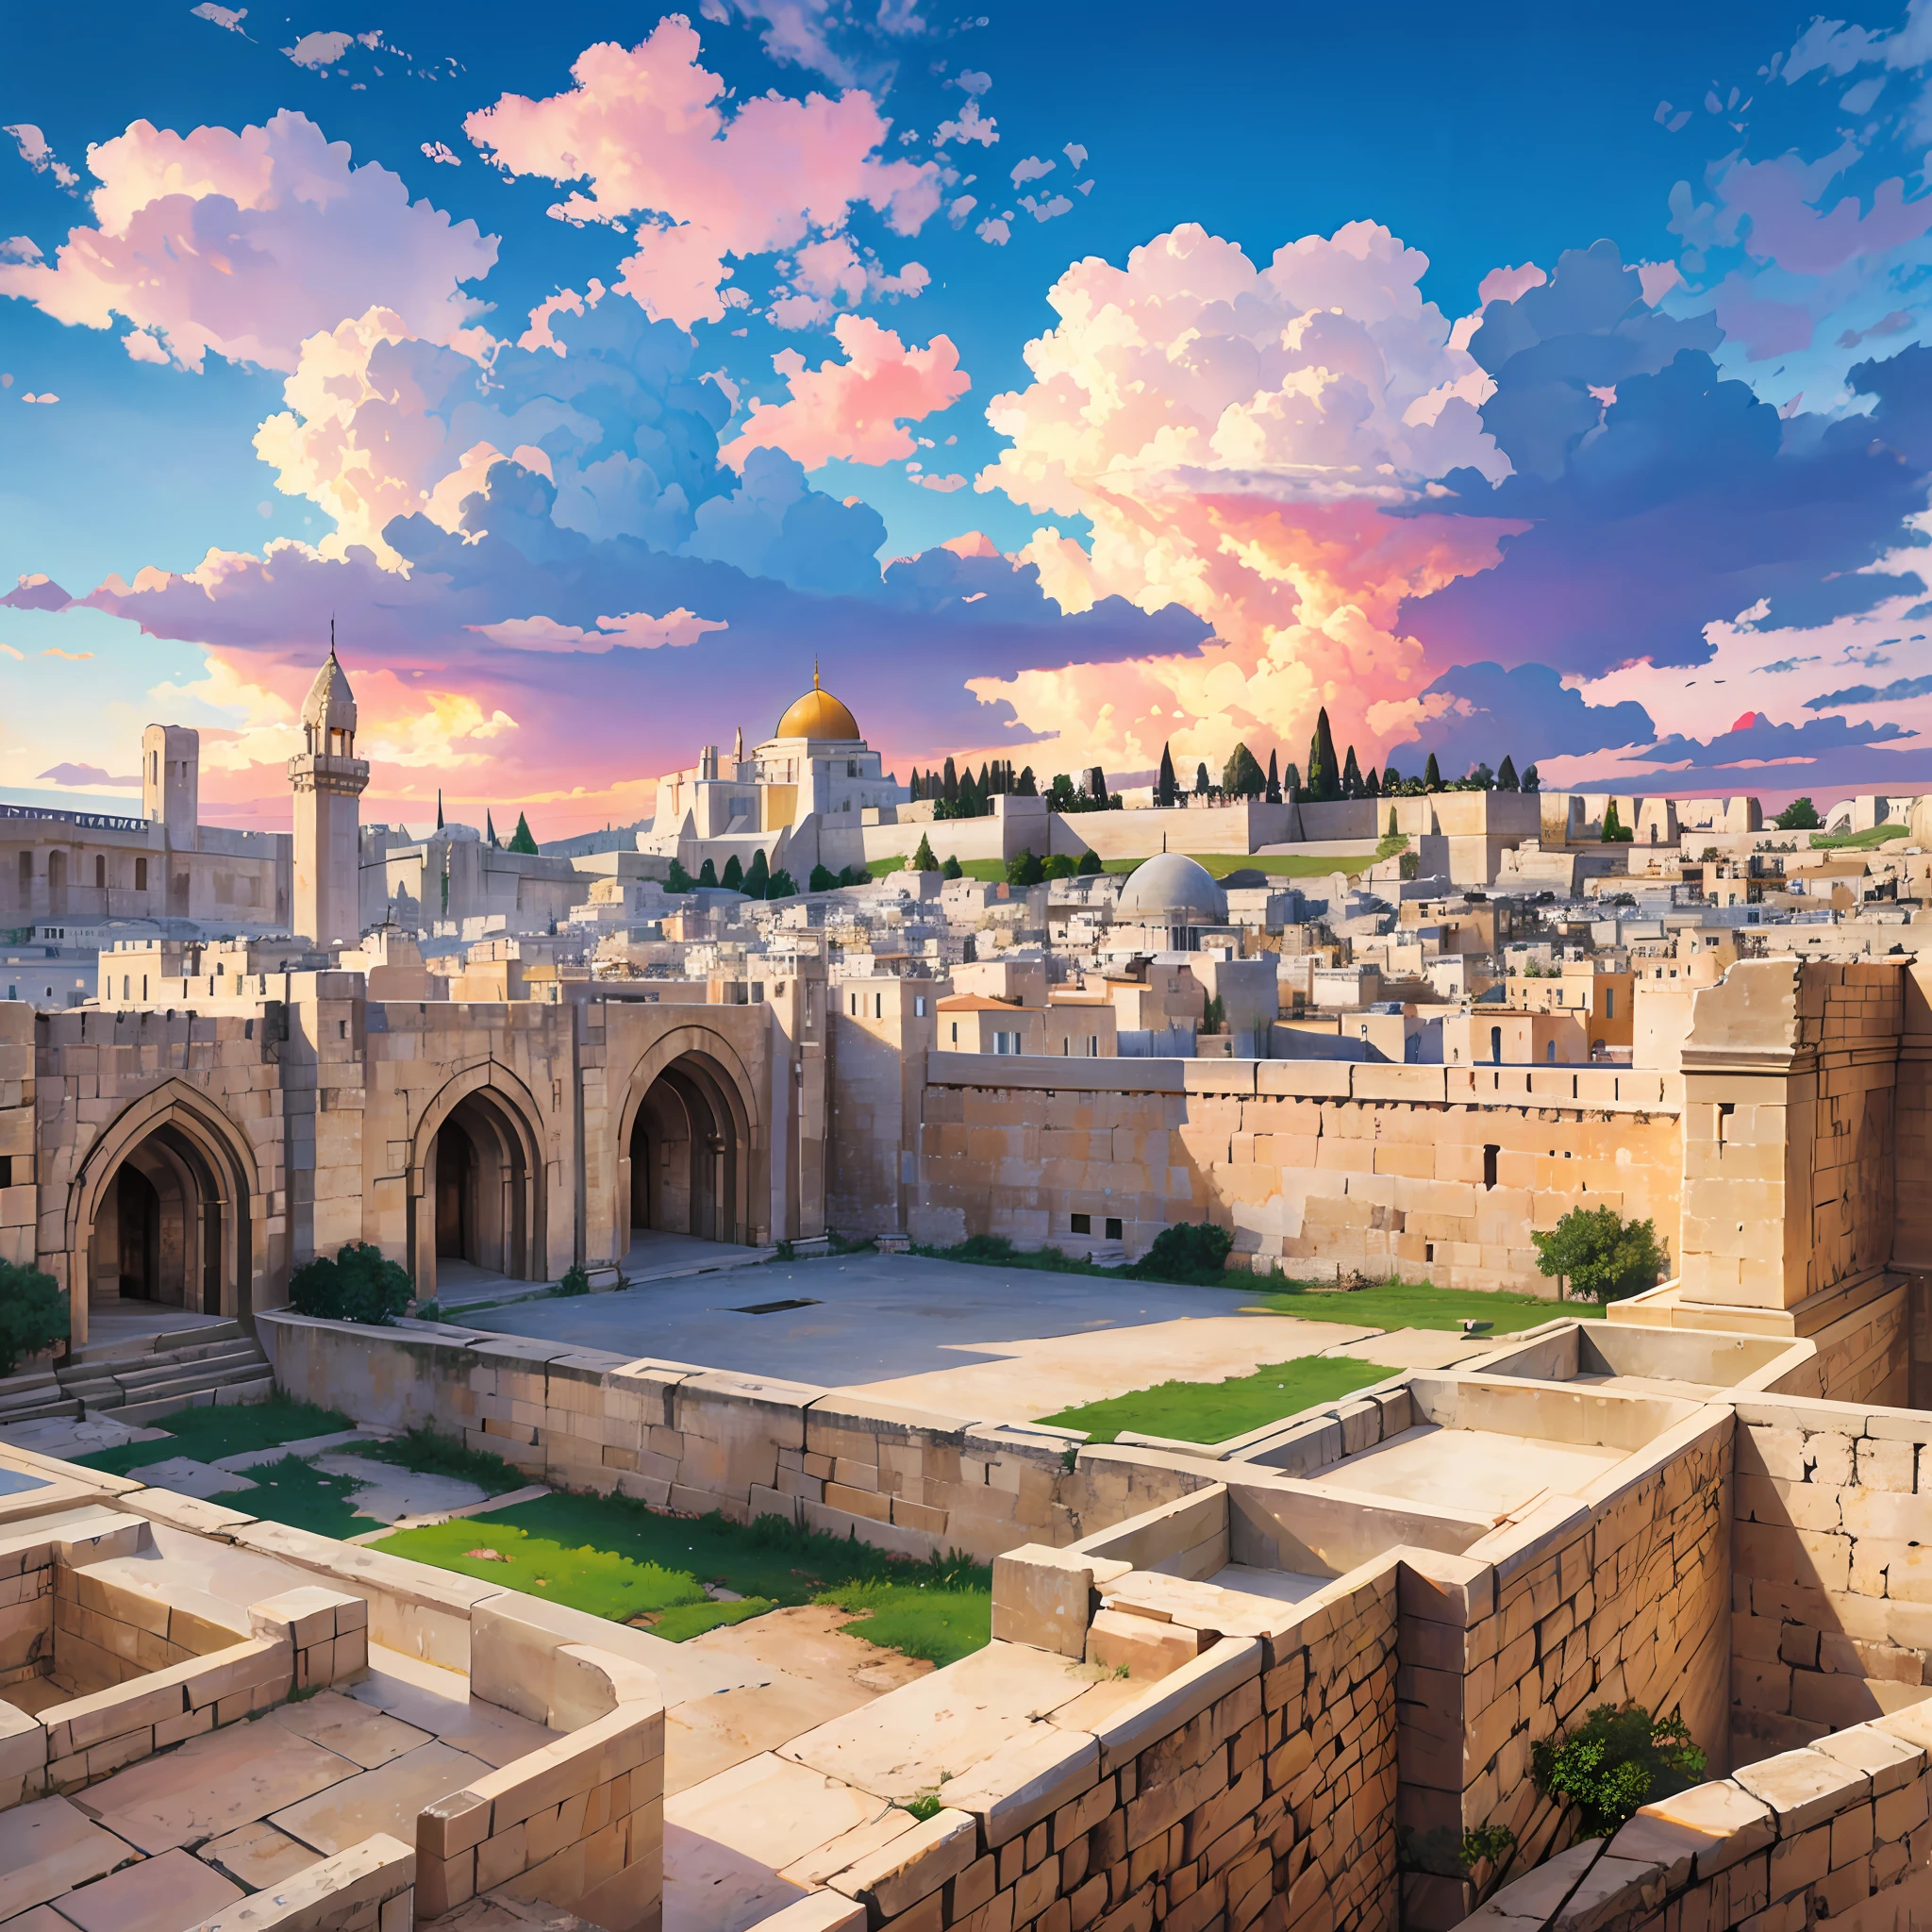 古耶路撒冷, 從基督時代起, 逼真的图像, 天空有雲, 16:9, 4k --自動 --s2